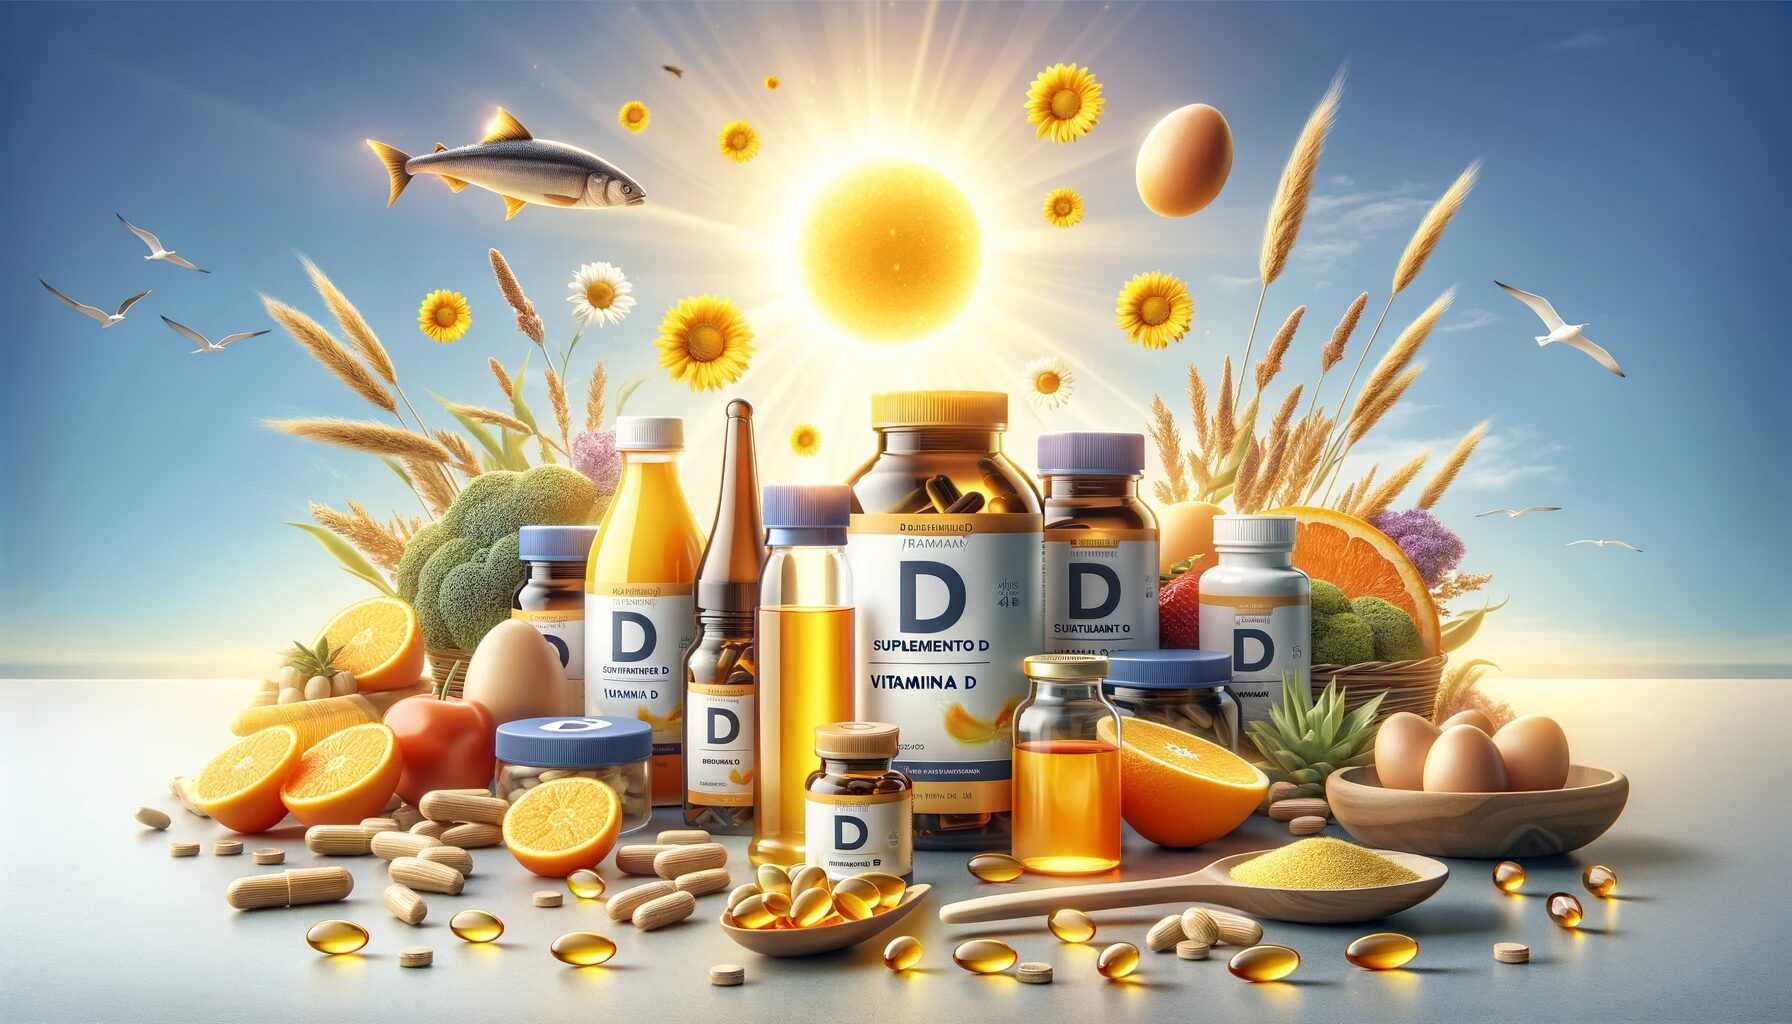 Fortaleça Sua Saúde com o Melhor Suplemento de Vitamina D